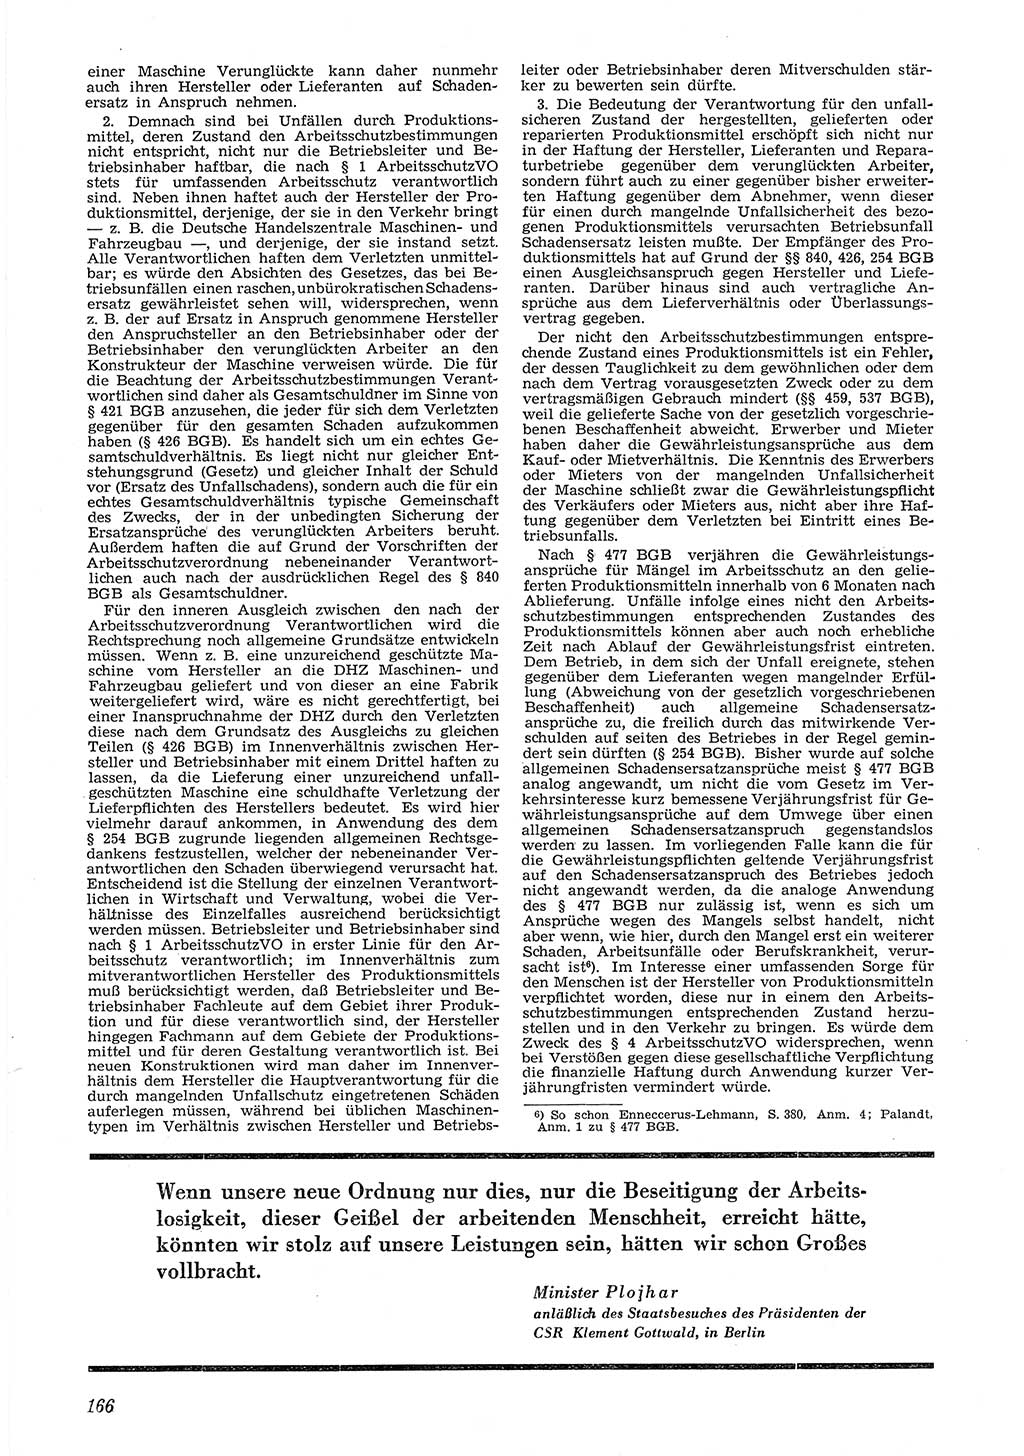 Neue Justiz (NJ), Zeitschrift für Recht und Rechtswissenschaft [Deutsche Demokratische Republik (DDR)], 6. Jahrgang 1952, Seite 166 (NJ DDR 1952, S. 166)